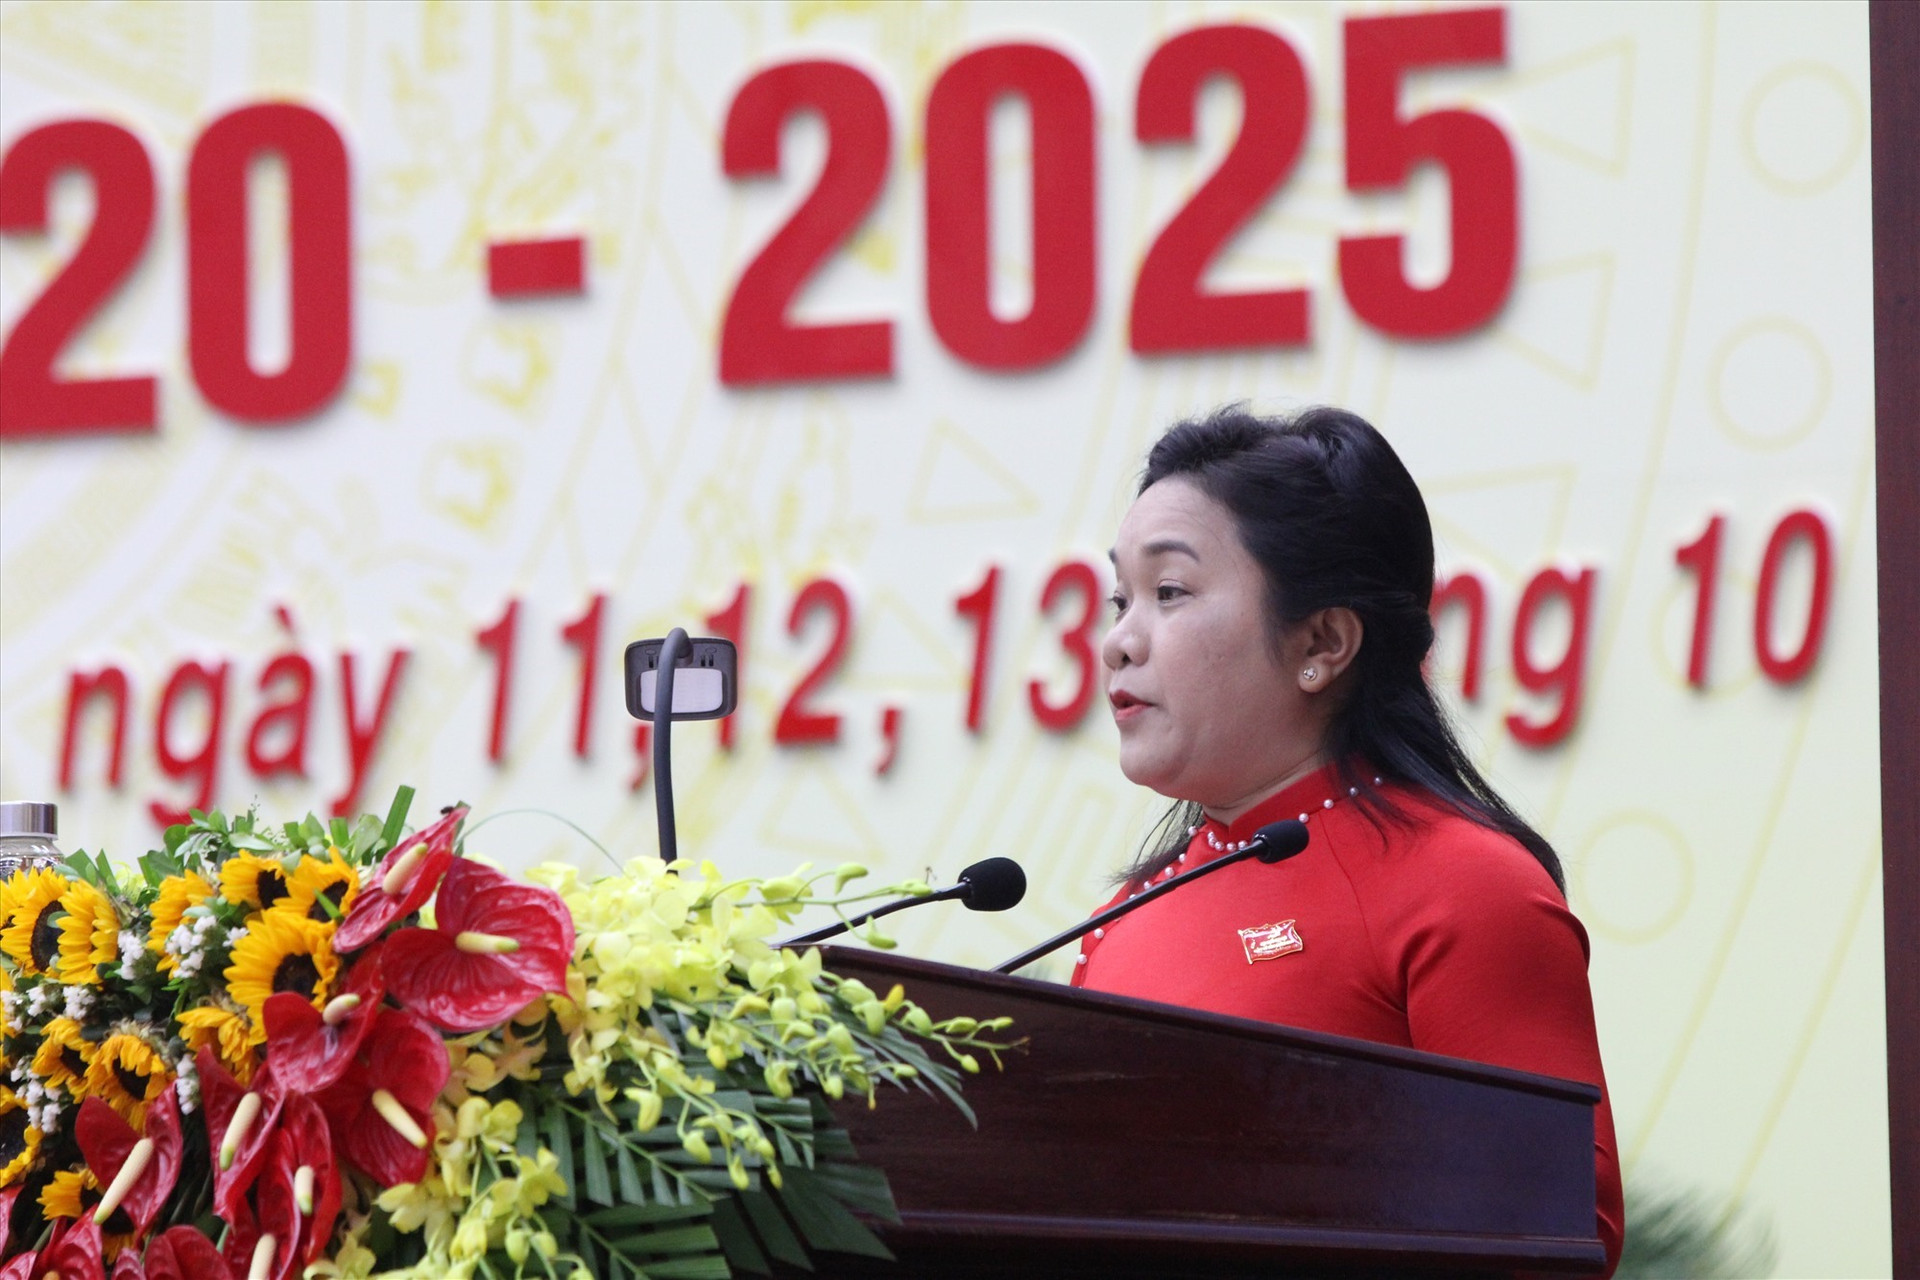 Trưởng ban Dân vận Tỉnh ủy Huỳnh Thị Thùy Dungtrình bày tóm tắt báo cáo tổng hợp các ý kiến góp ý vào dự thảo các văn kiện trình Đại hội đại biểu toàn quốc lần thứ XIII của Đảng.